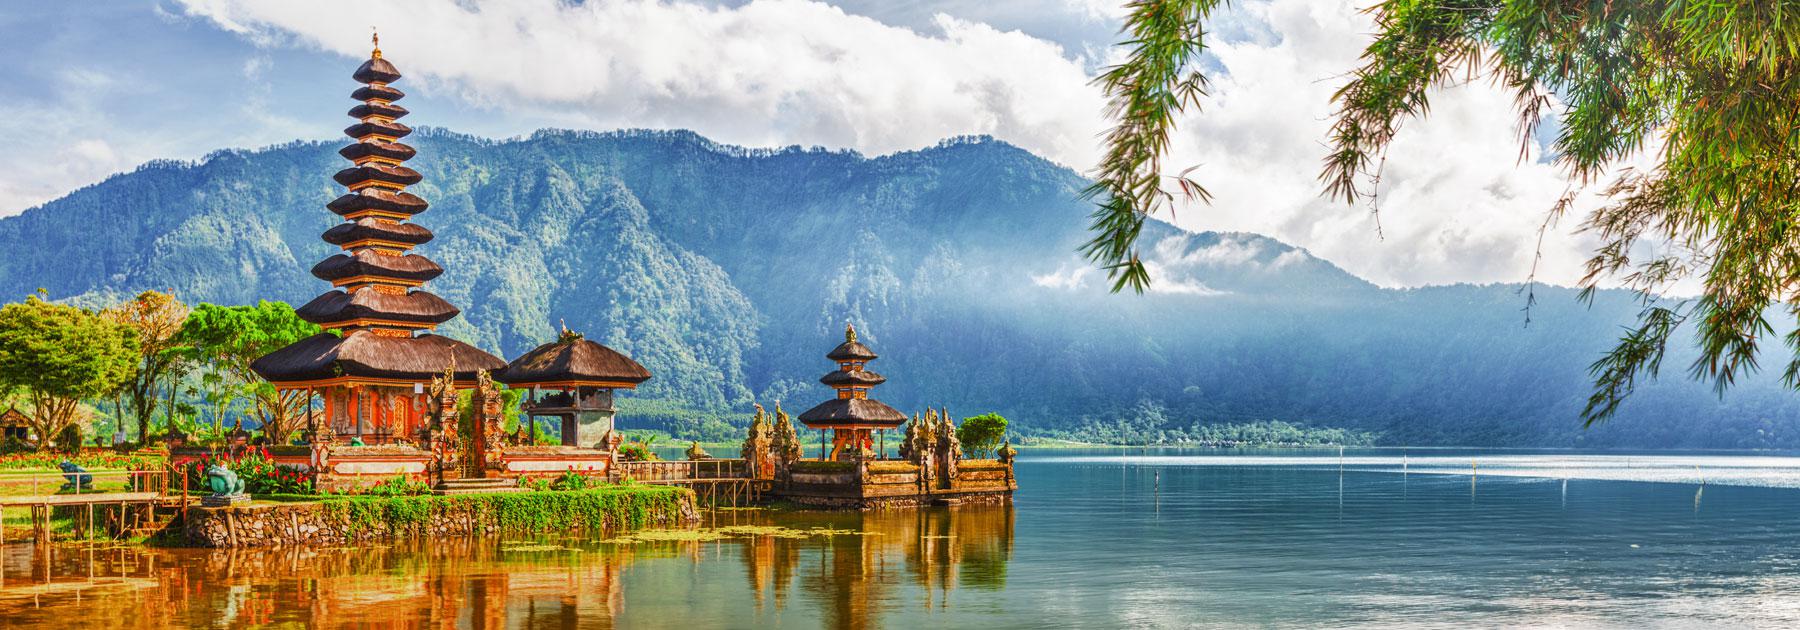 tempio di Bali, da visitare in sicurezza con un'assicurazione viaggio Indonesia